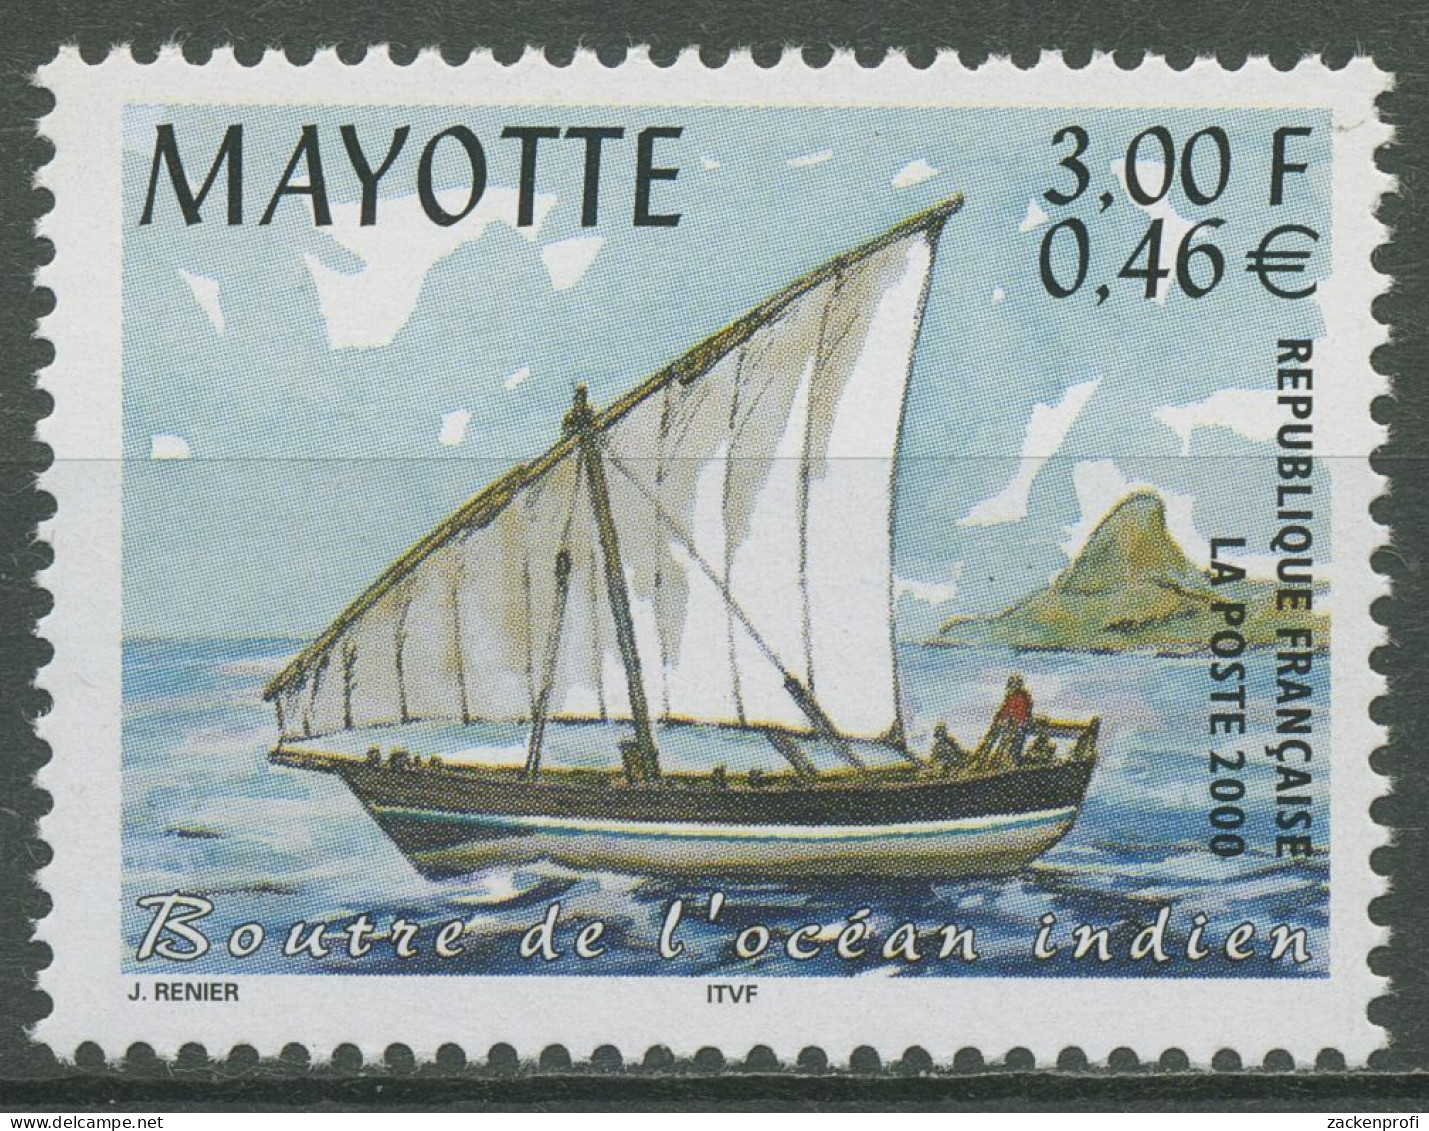 Mayotte 2000 Boutre Fischerboot 79 Postfrisch - Ongebruikt